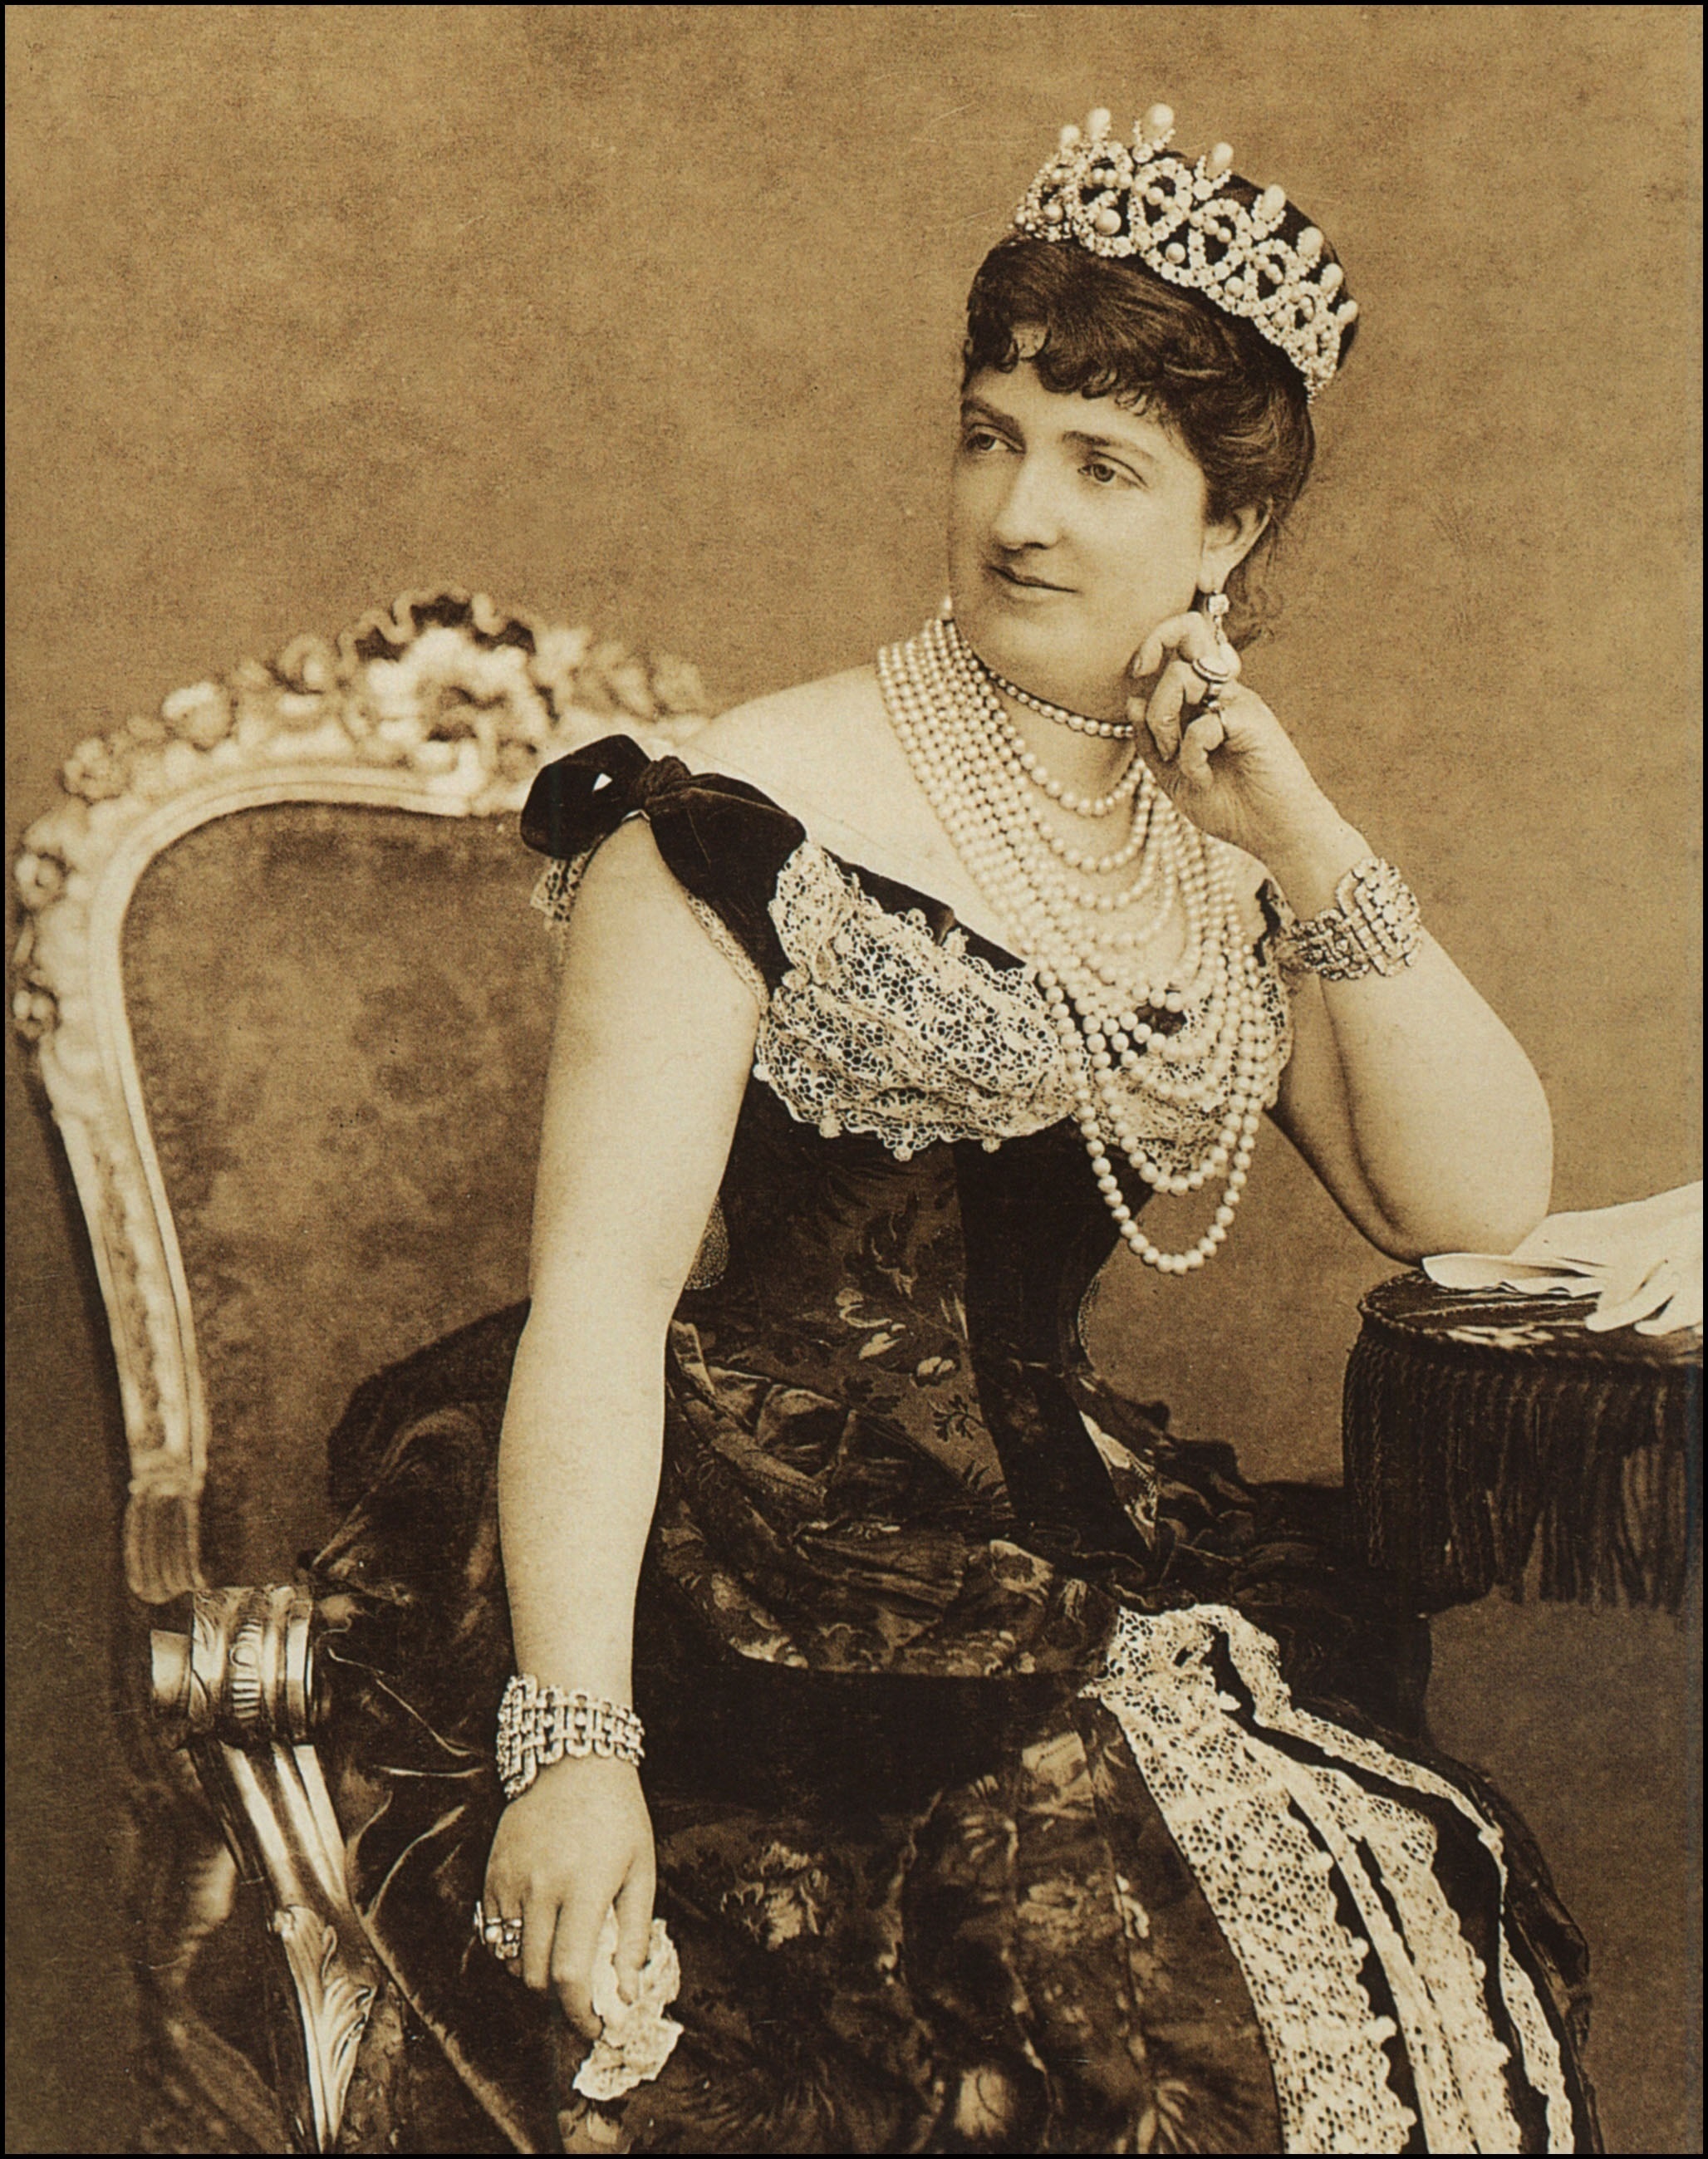 La reina Margarita con tiara y sus famosos collares de perlas.